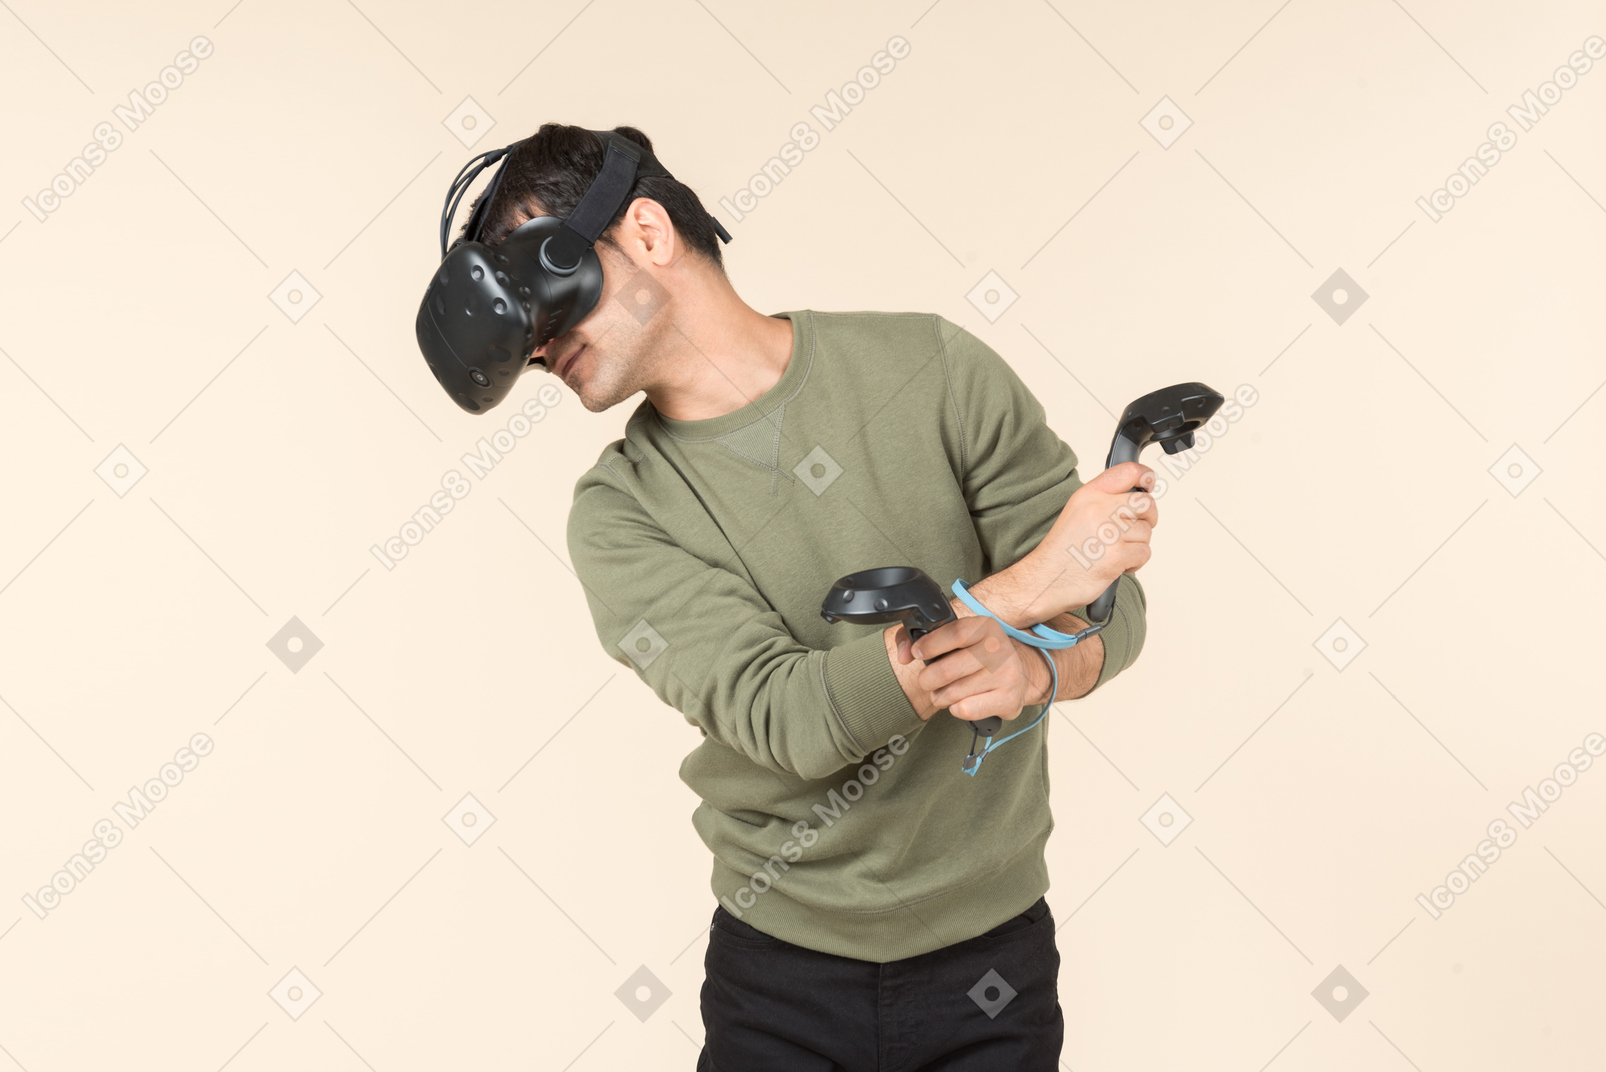 Junger kaukasischer kerl, der ein spiel der virtuellen realität spielt